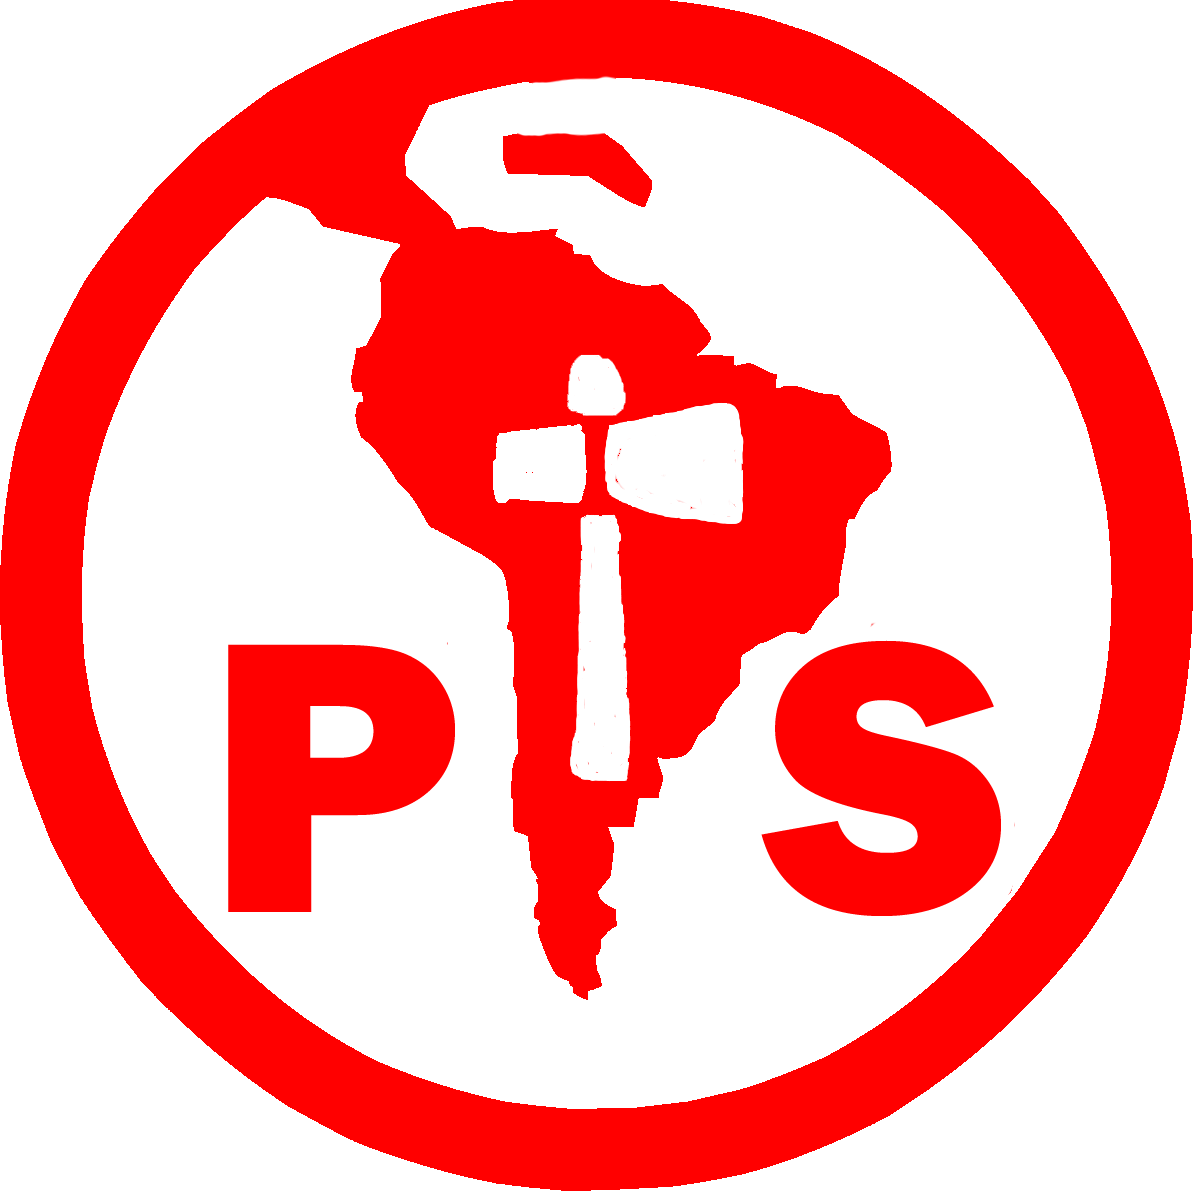 Comunicado del Partido Socialista sobre candidaturas a Diputado y Consejeros Regionales en Magallanes